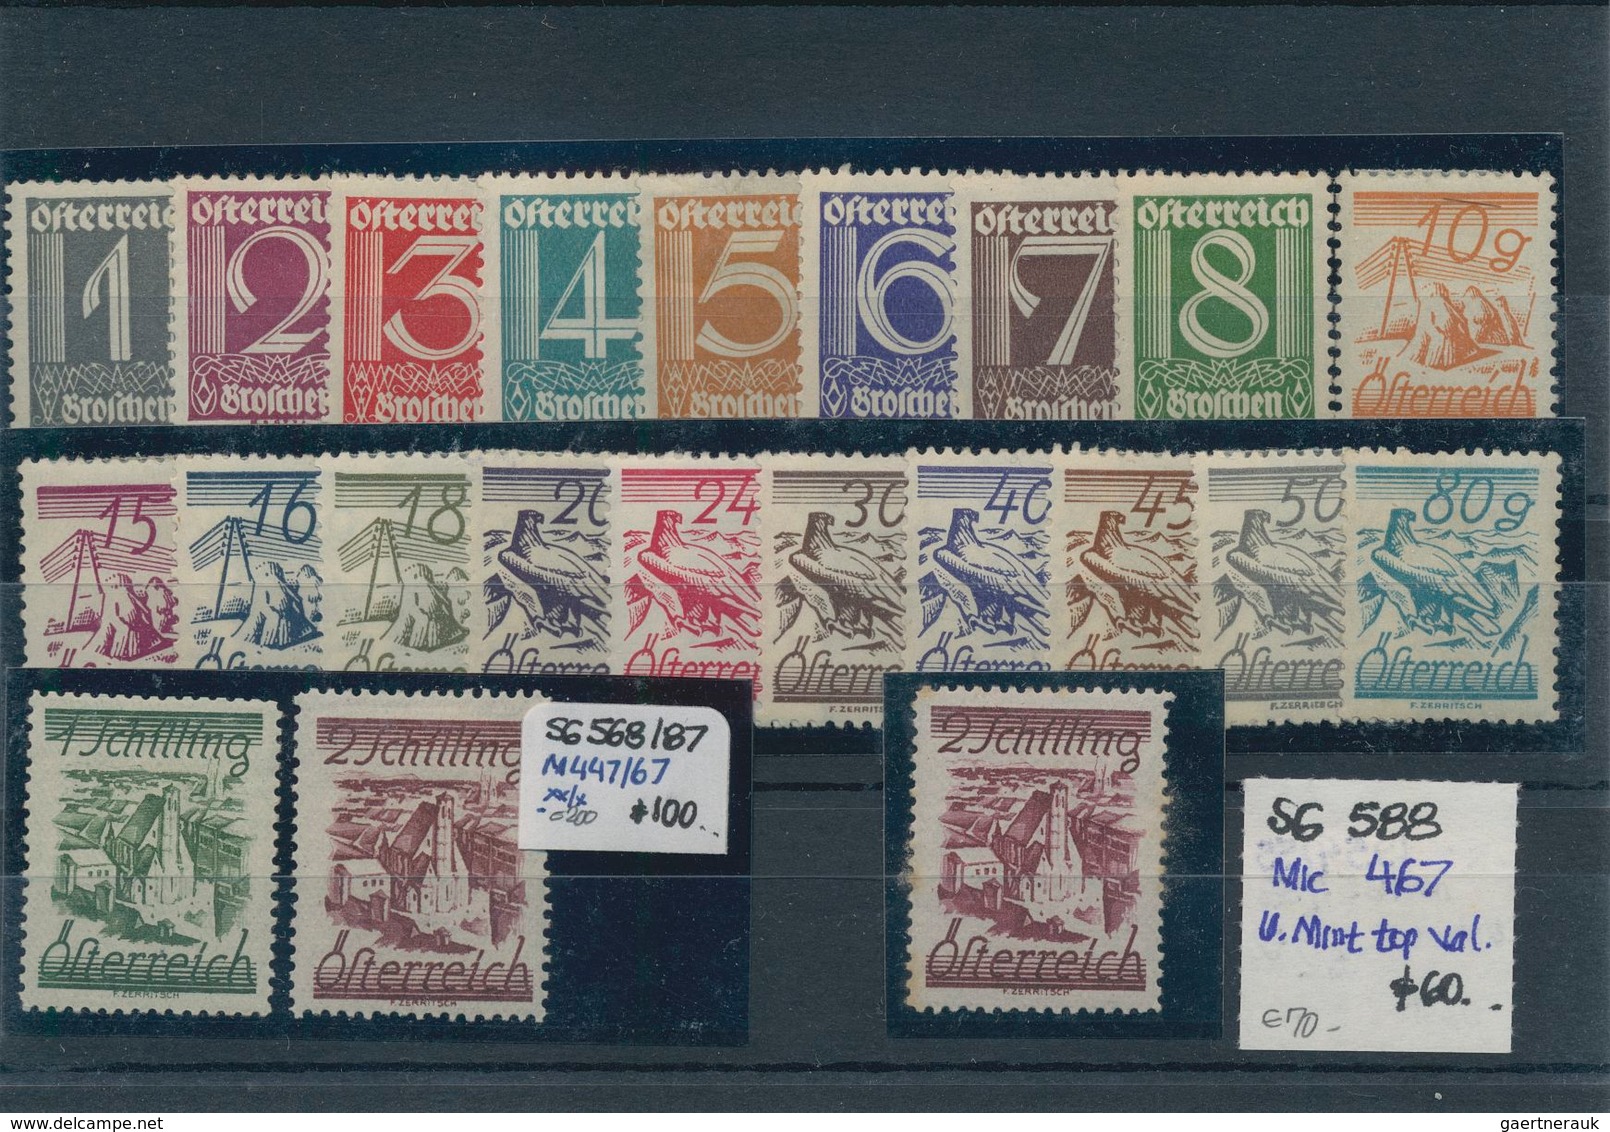 Österreich: 1850/1960 (ca.), sauber sortierter Bestand auf Steckkarten in zwei Ringalben, durchweg g